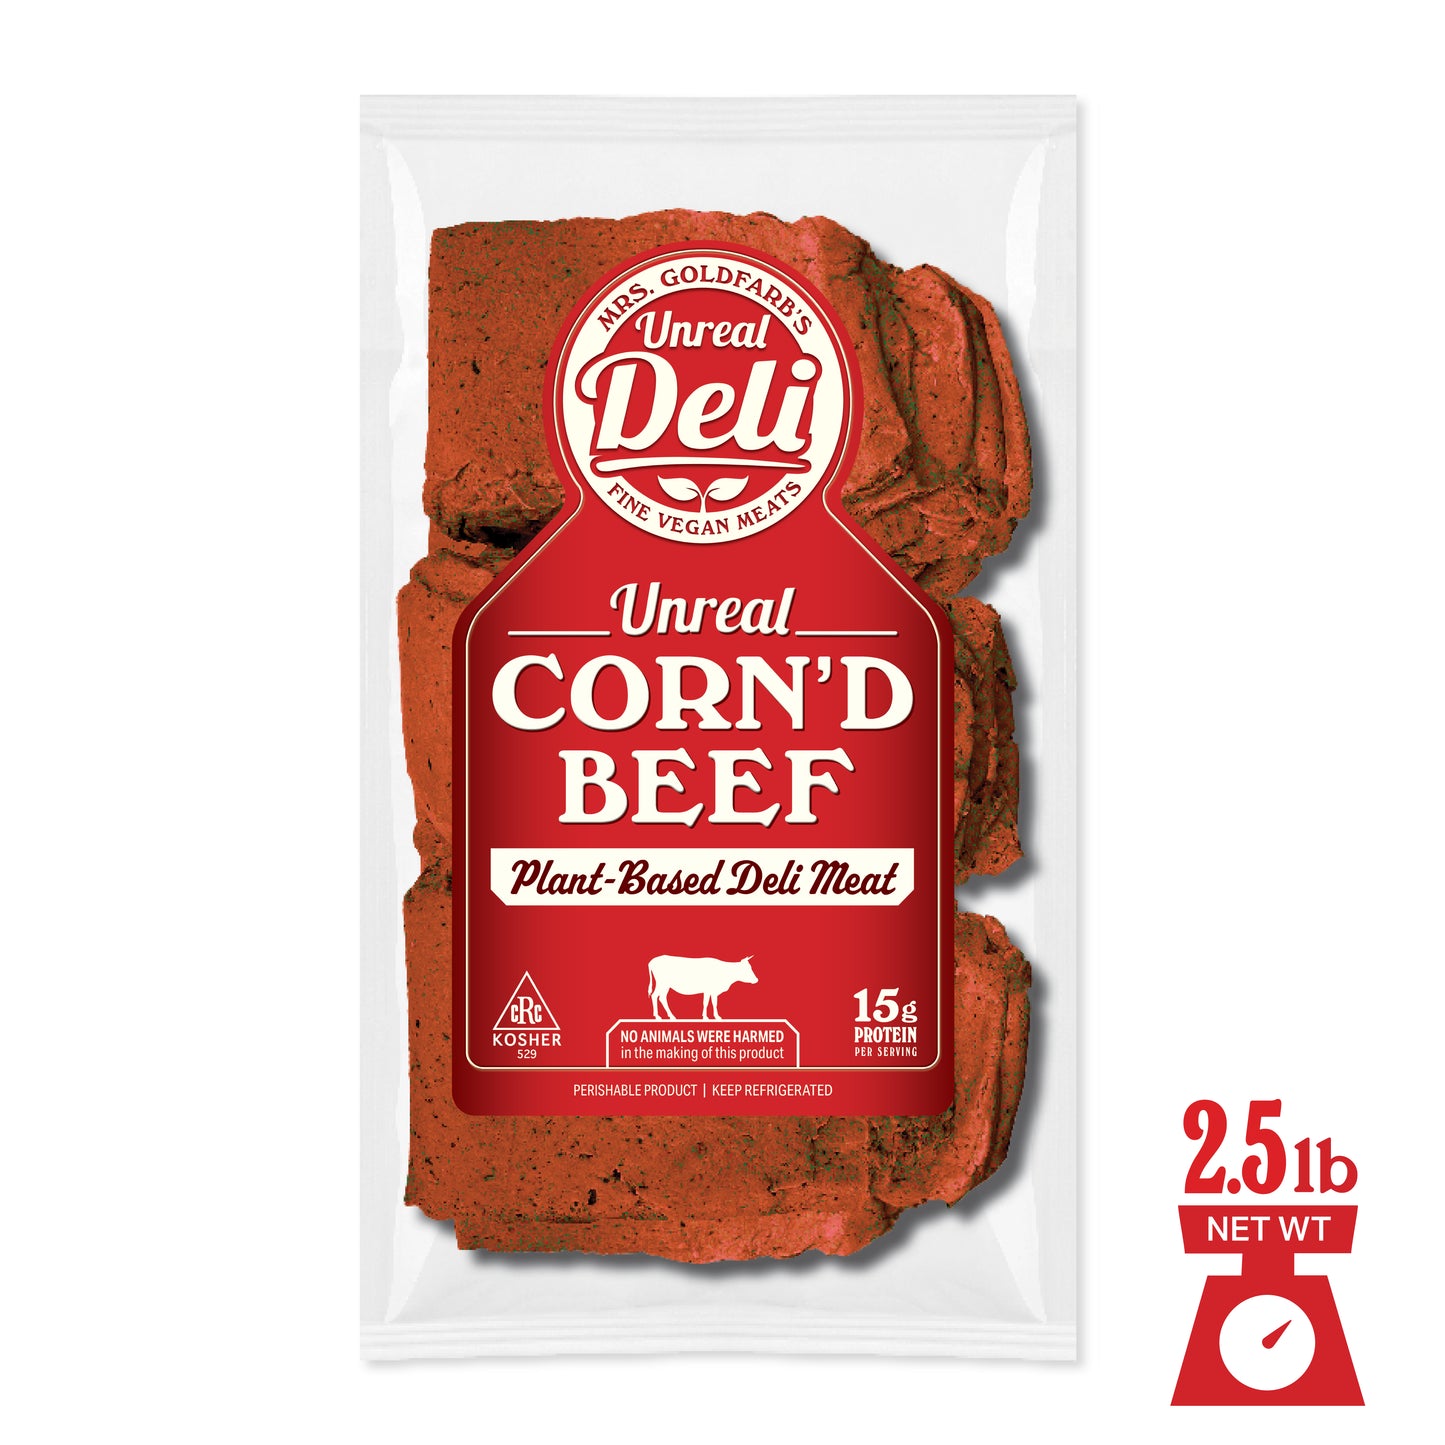 Vegan Corned Beef - The Hidden Veggies